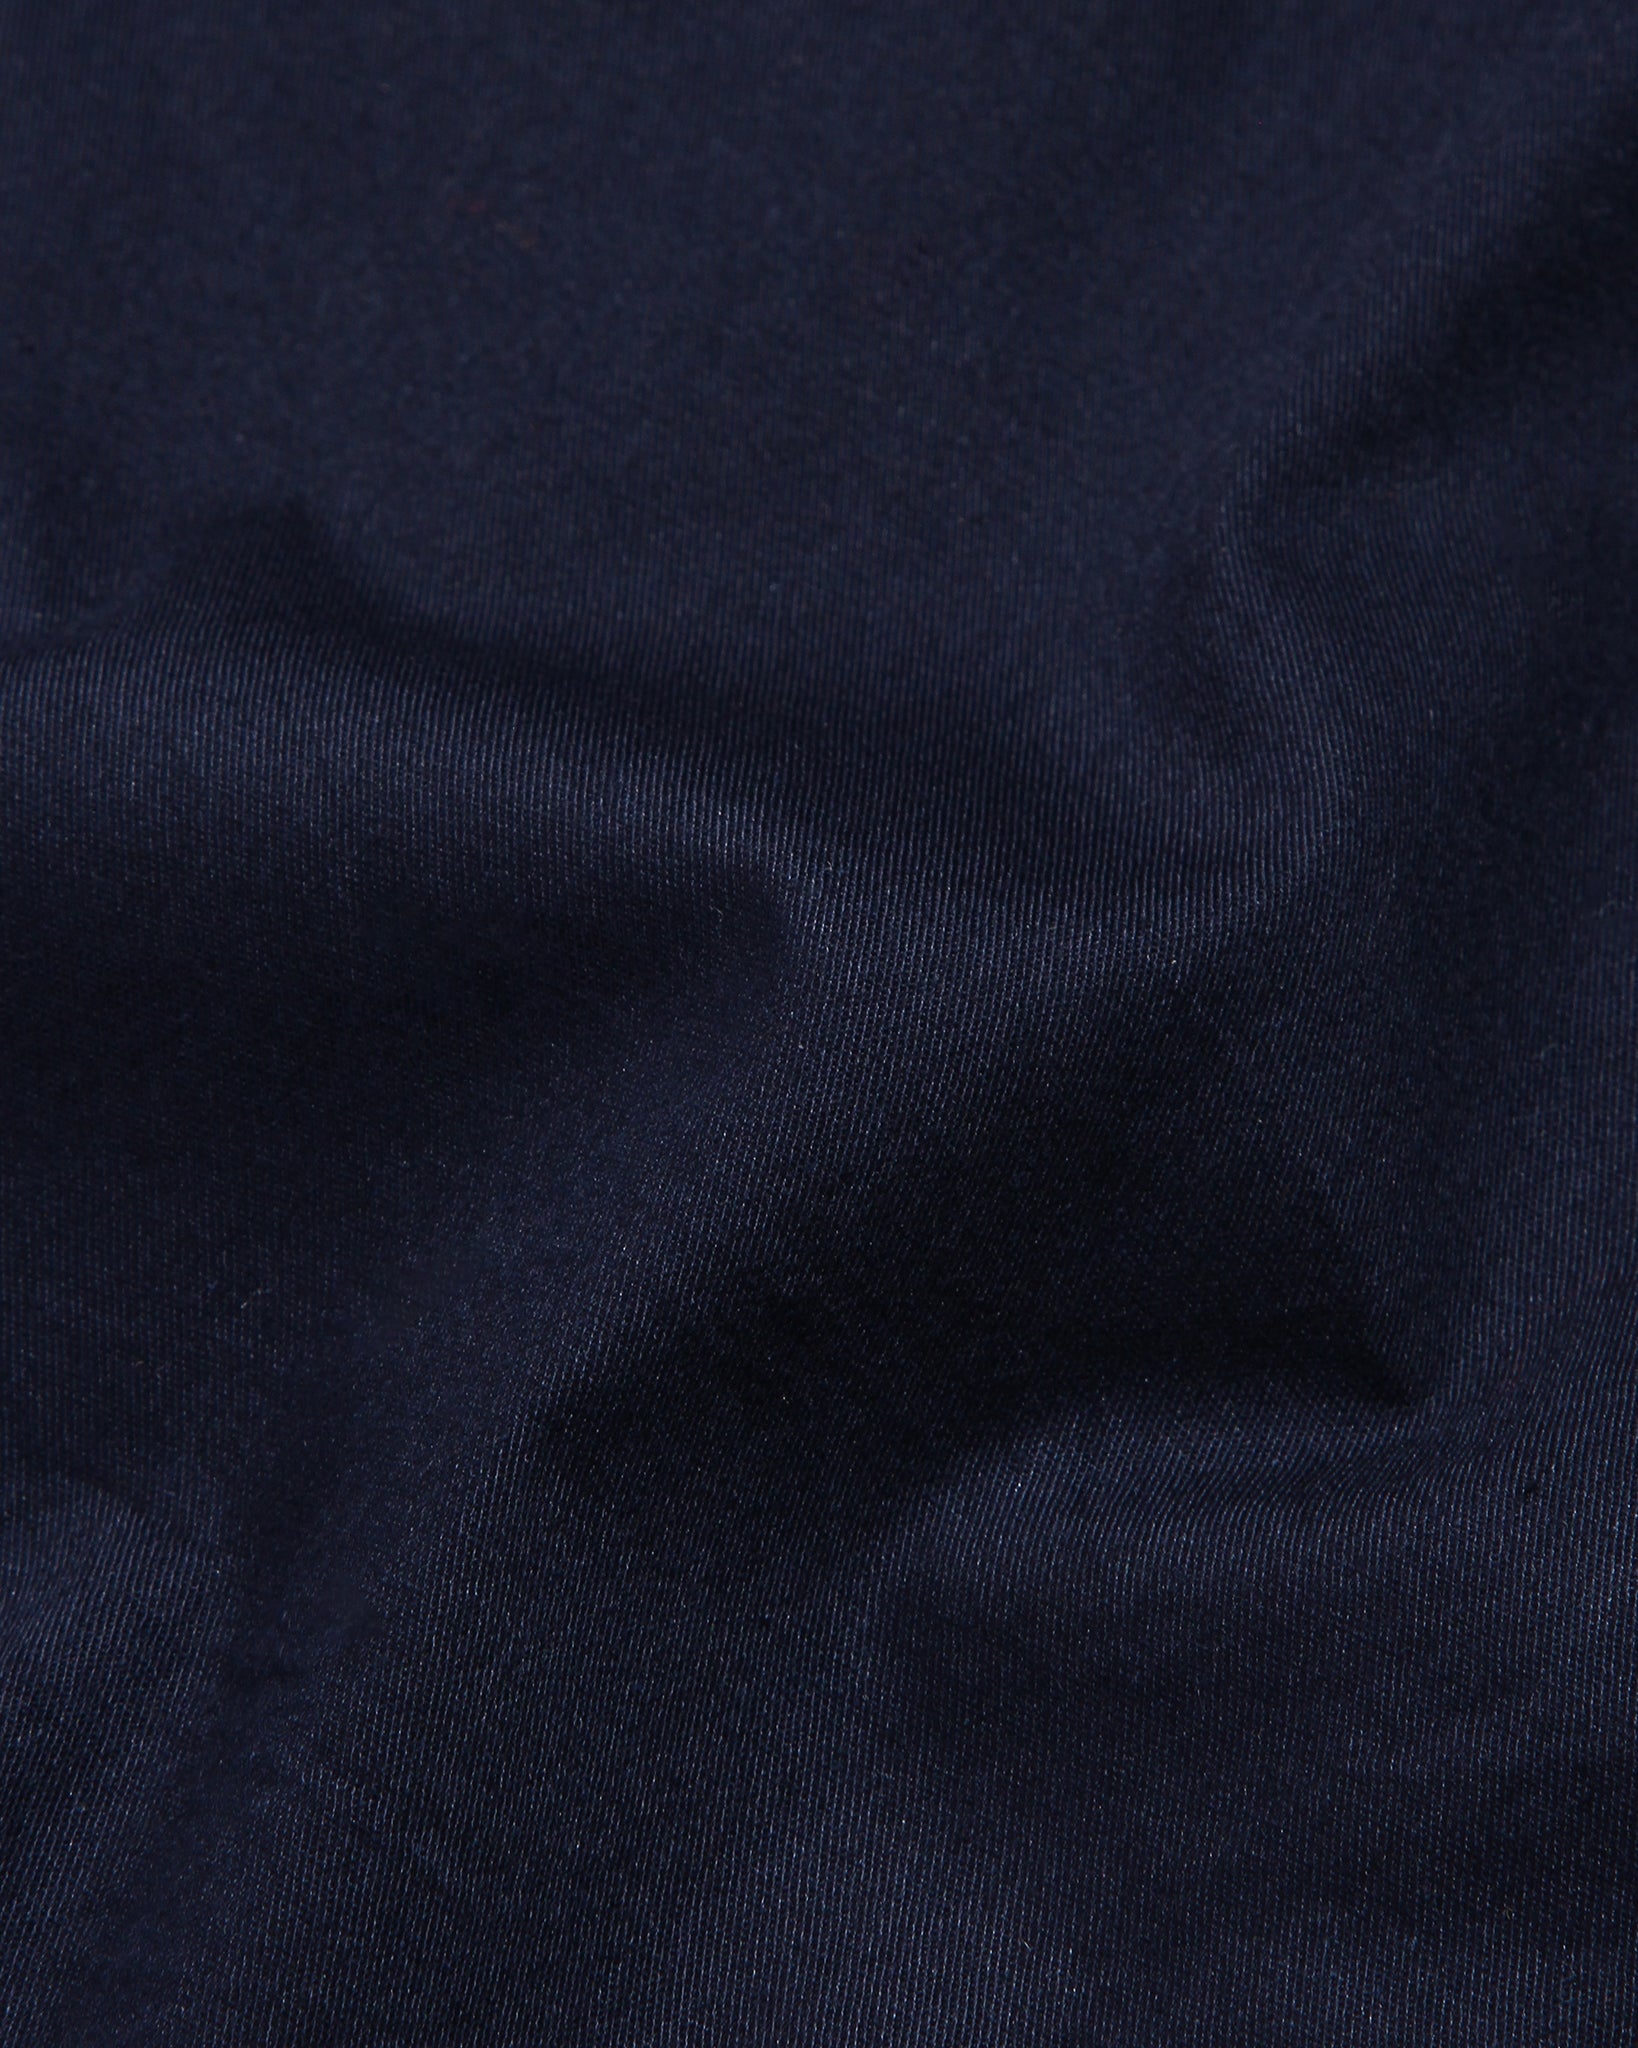 Navy Blue Super Soft Black Button Premium Cotton Shirt